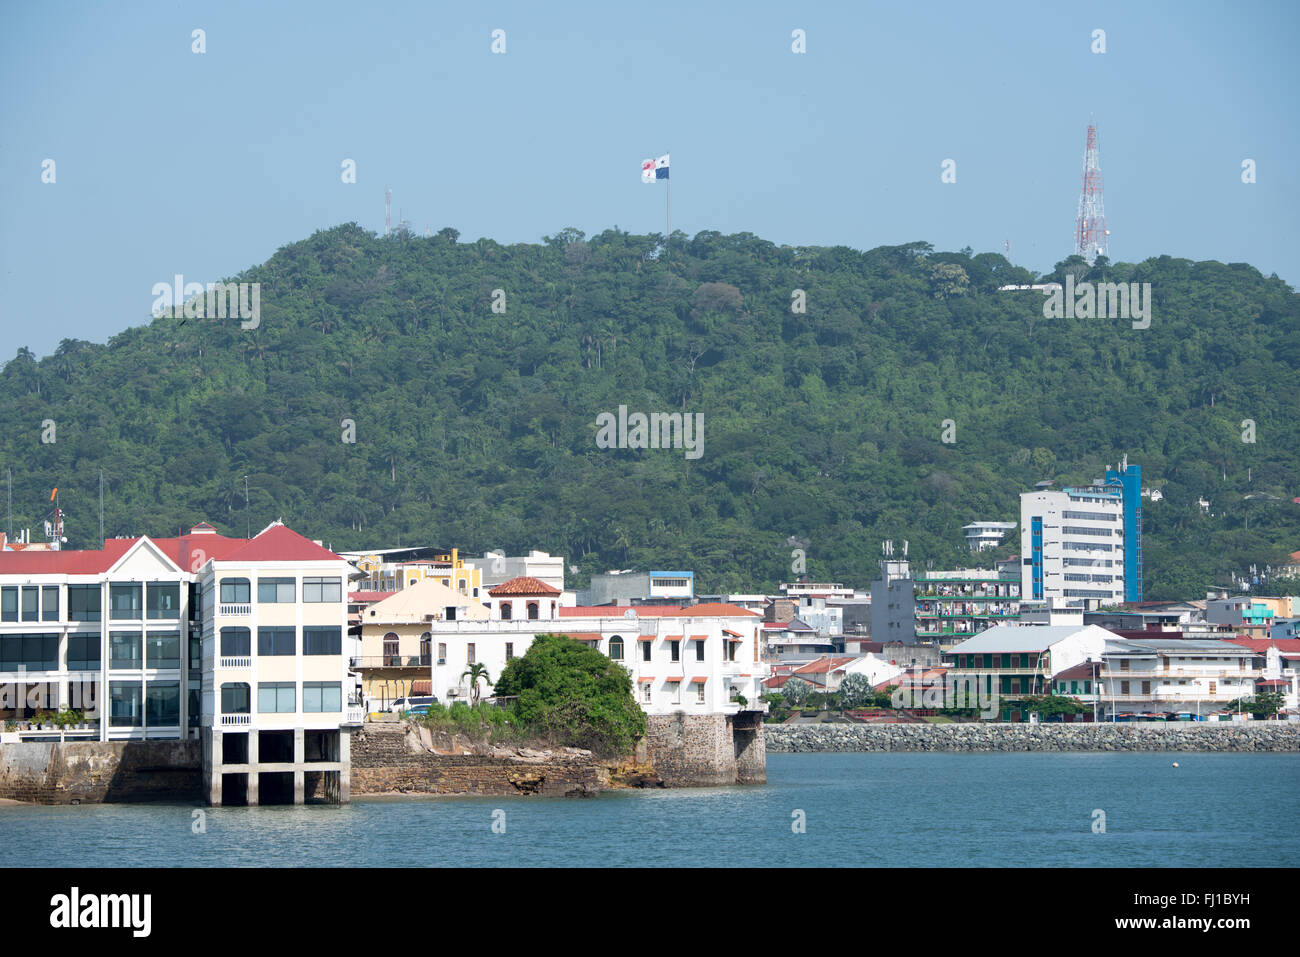 PANAMA CITY, Panama - historische Gebäude von Casco Viejo an der Küste von Panama City, Panama, Panama Bucht, von der Küste Beltway (Cinta Costera III) gesehen. Stockfoto